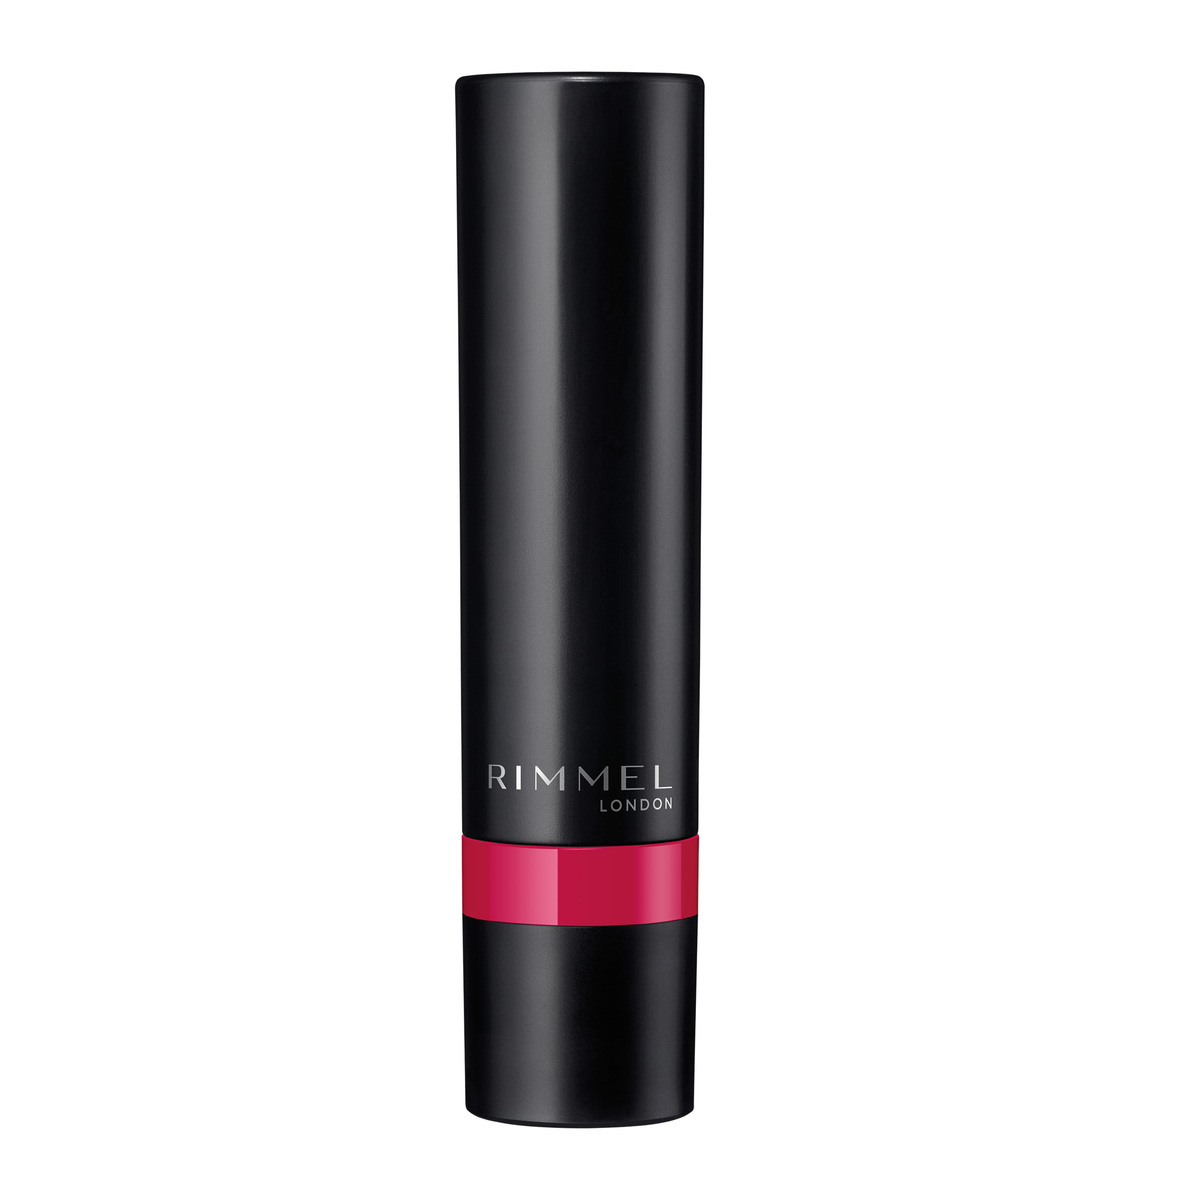 Rimmel London Lasting Finish Matte Lipstick, 170 Fuchsia, 1.2 g